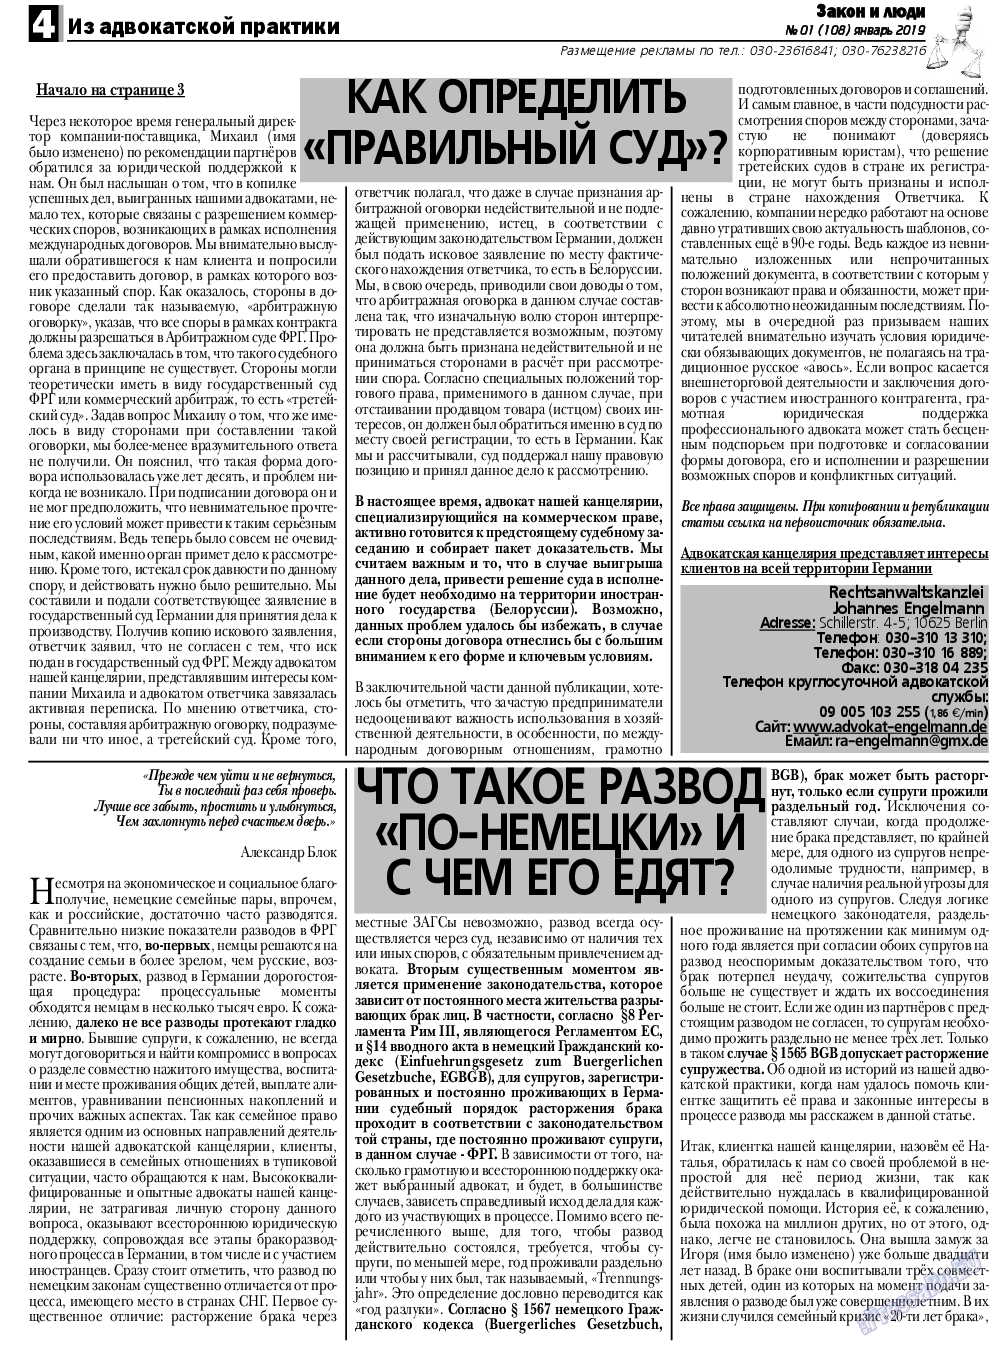 Закон и люди, газета. 2019 №1 стр.4